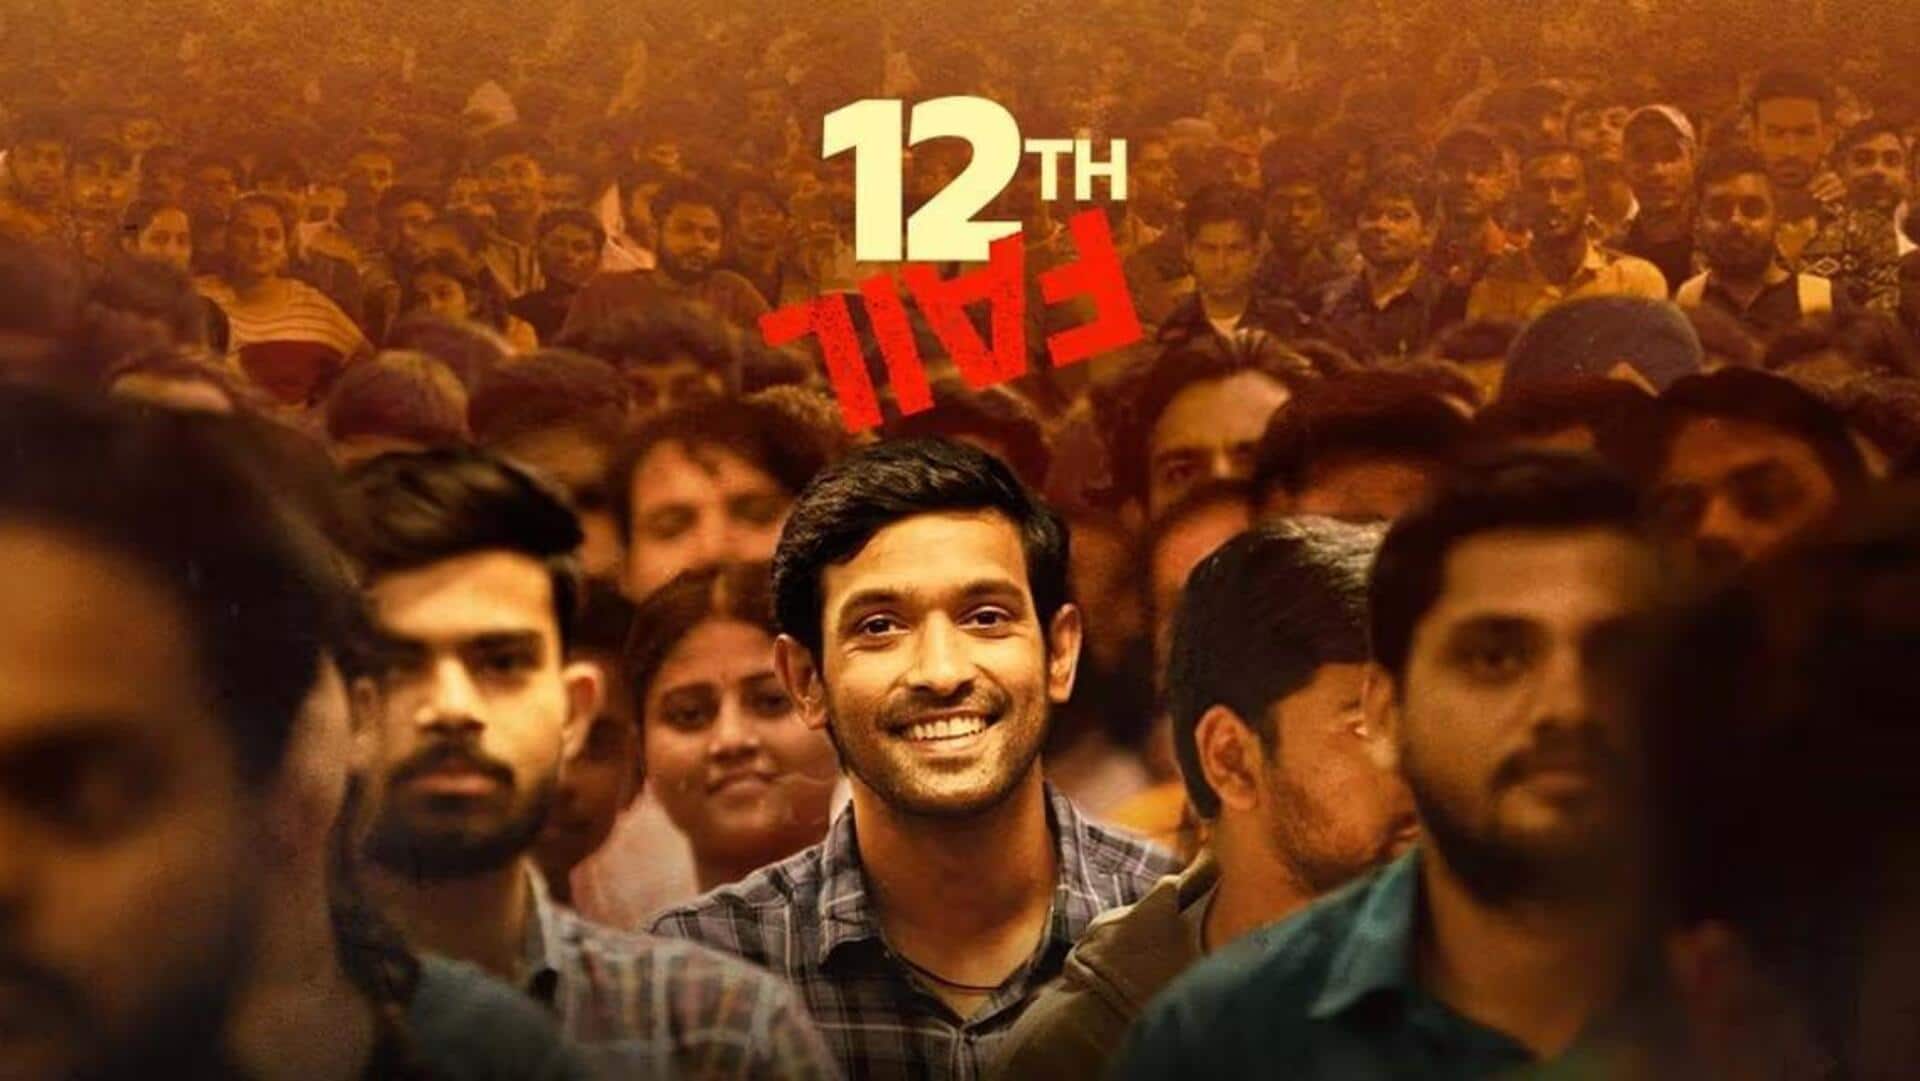 बॉक्स ऑफिस: विक्रांत मैसी की फिल्म '12वीं फेल' ने 24वें दिन कमाए इतने लाख रुपये 